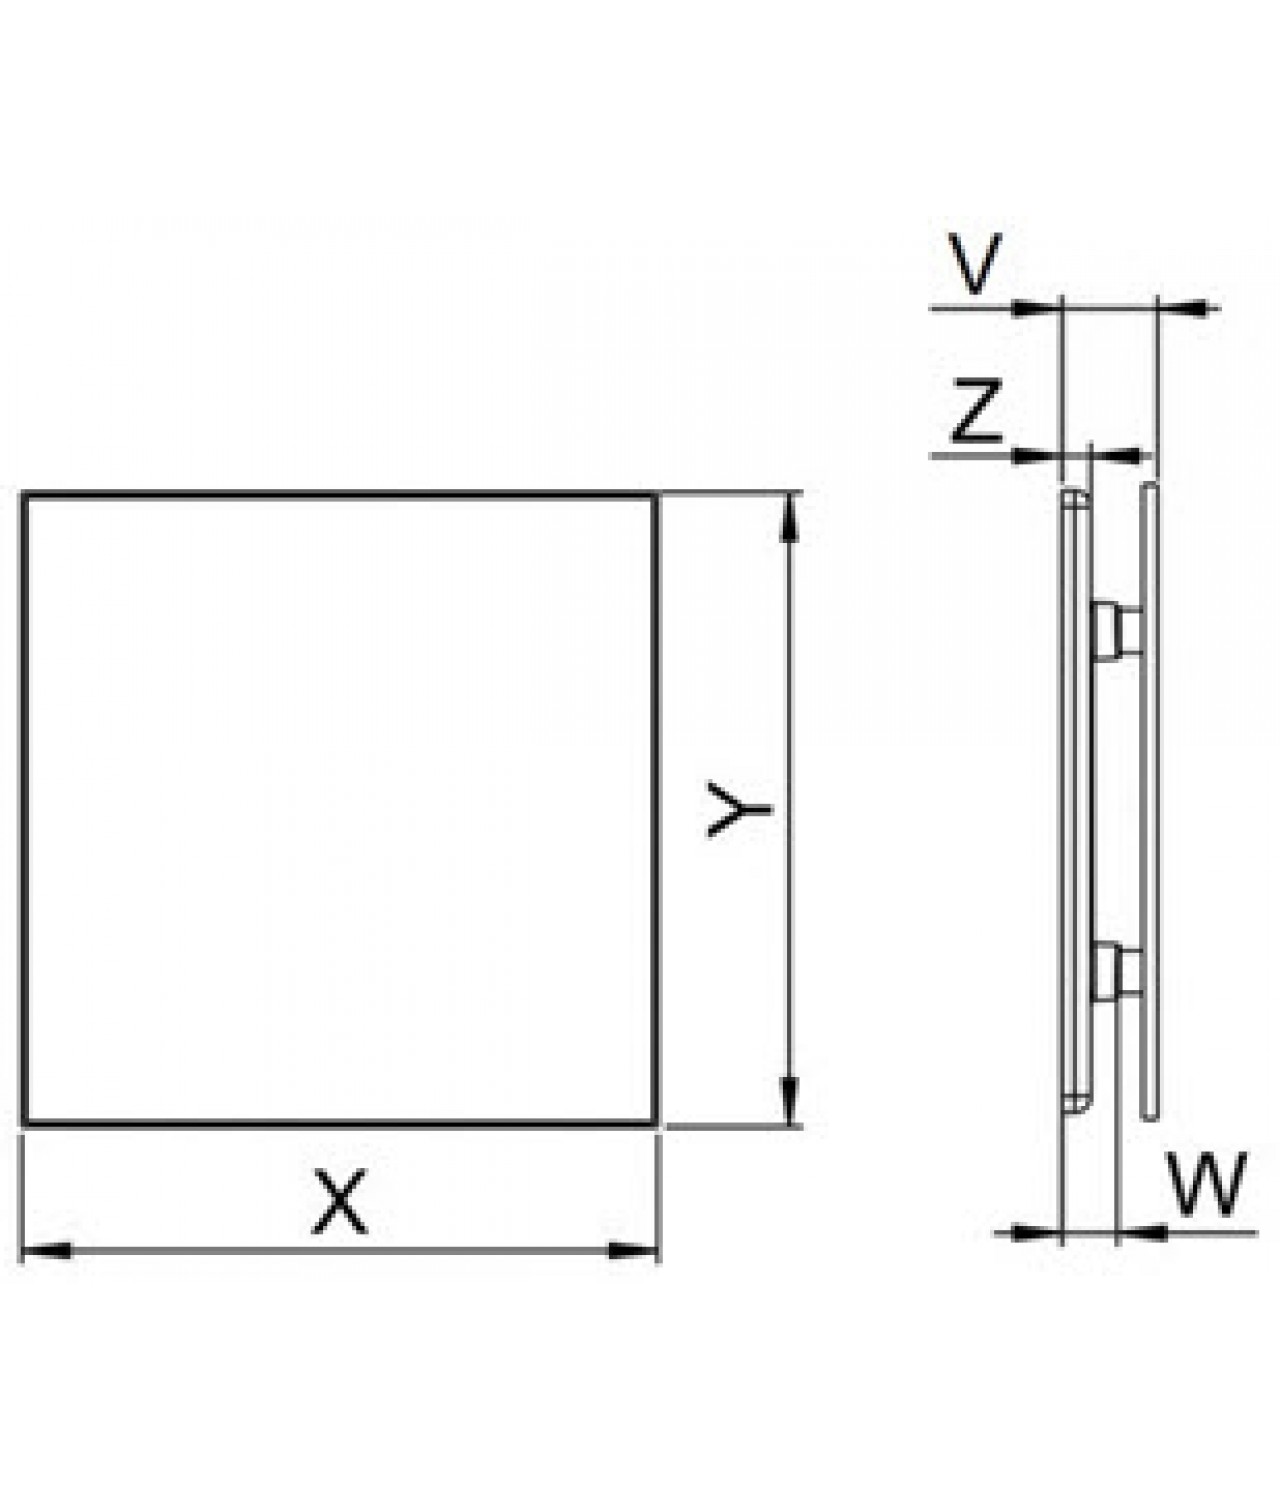 Интерьерная панель PTGB125M - TRAX GLASS black matte, чертеж